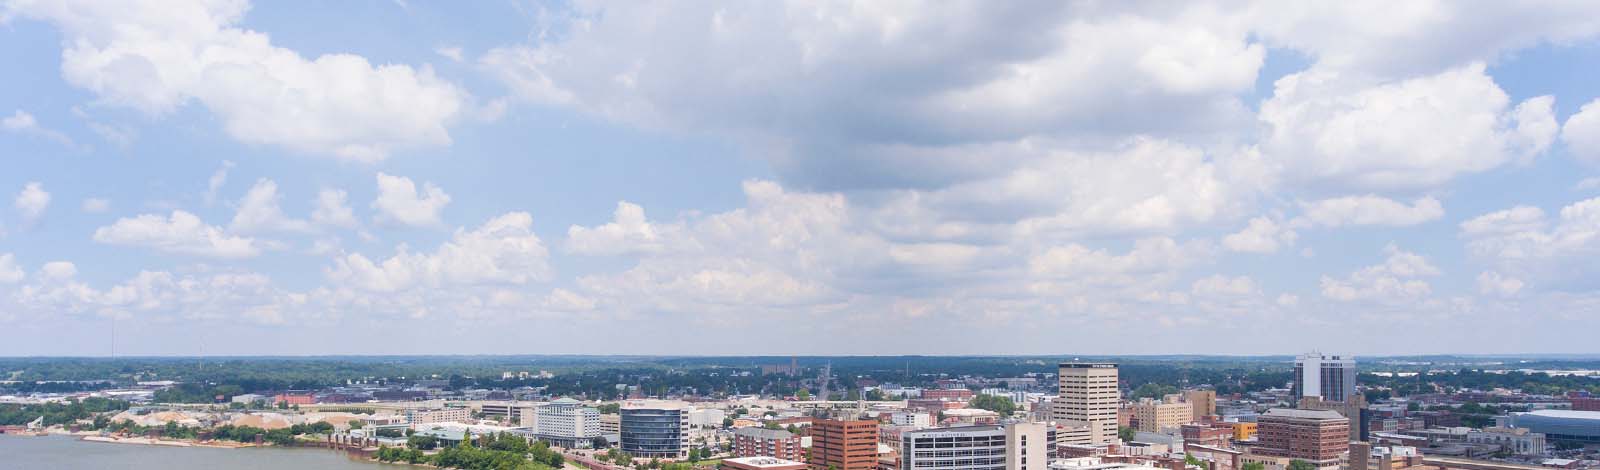 Evansville skyline